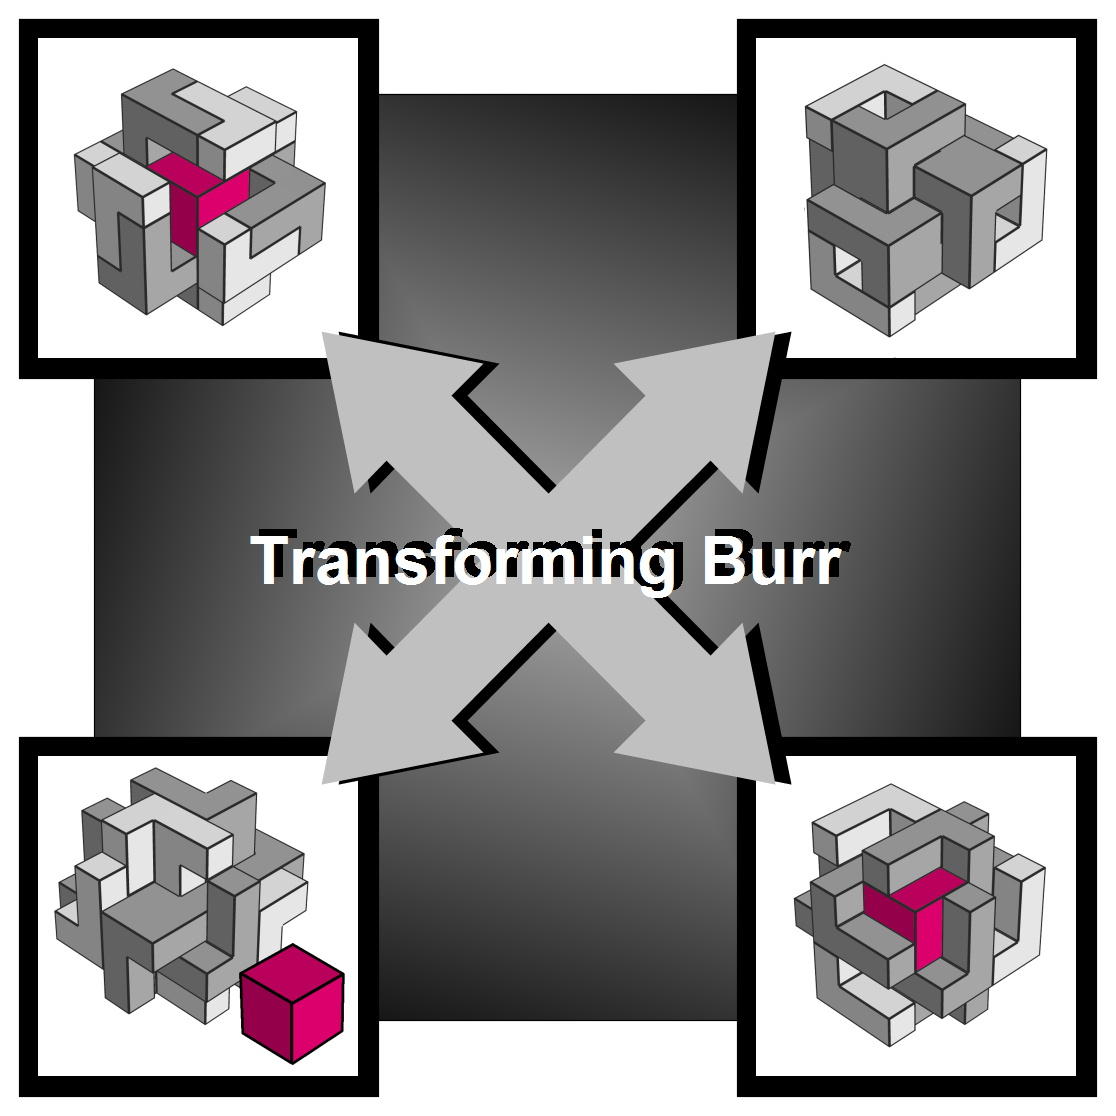 transforming-burr-4-solutions.jpg